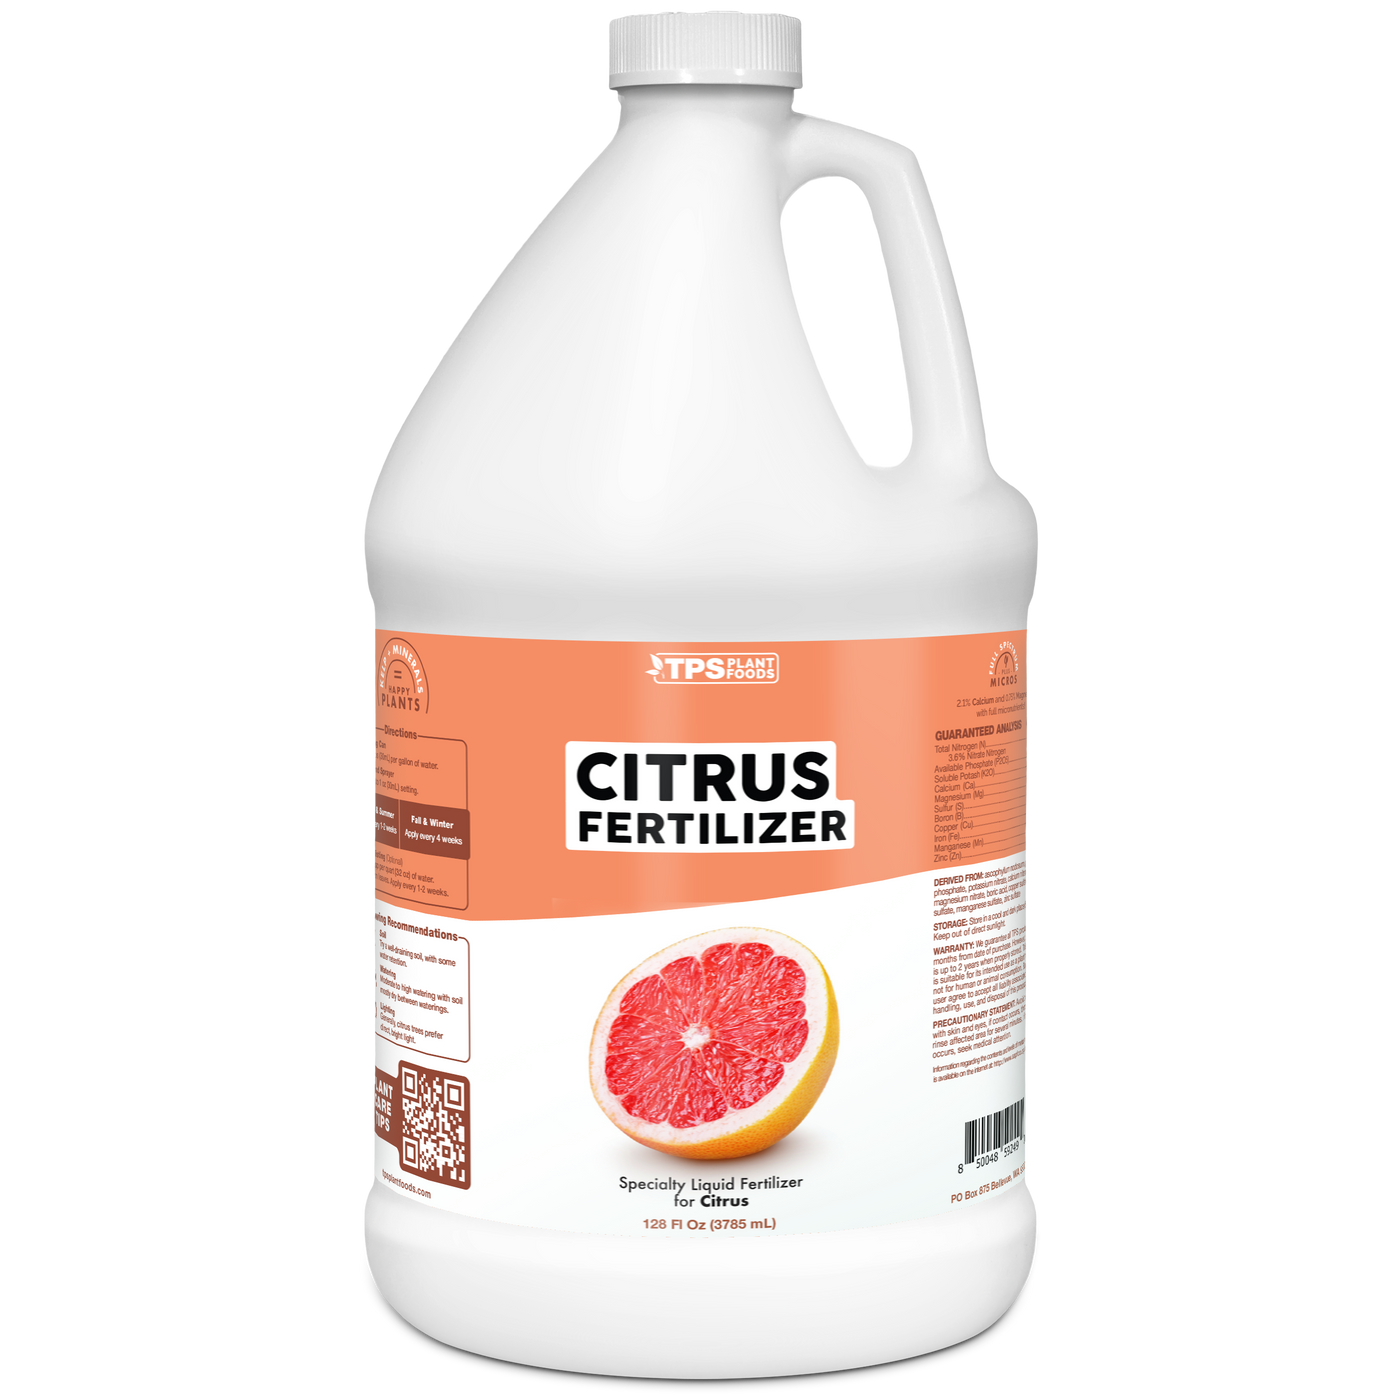 Citrus Fertilizer